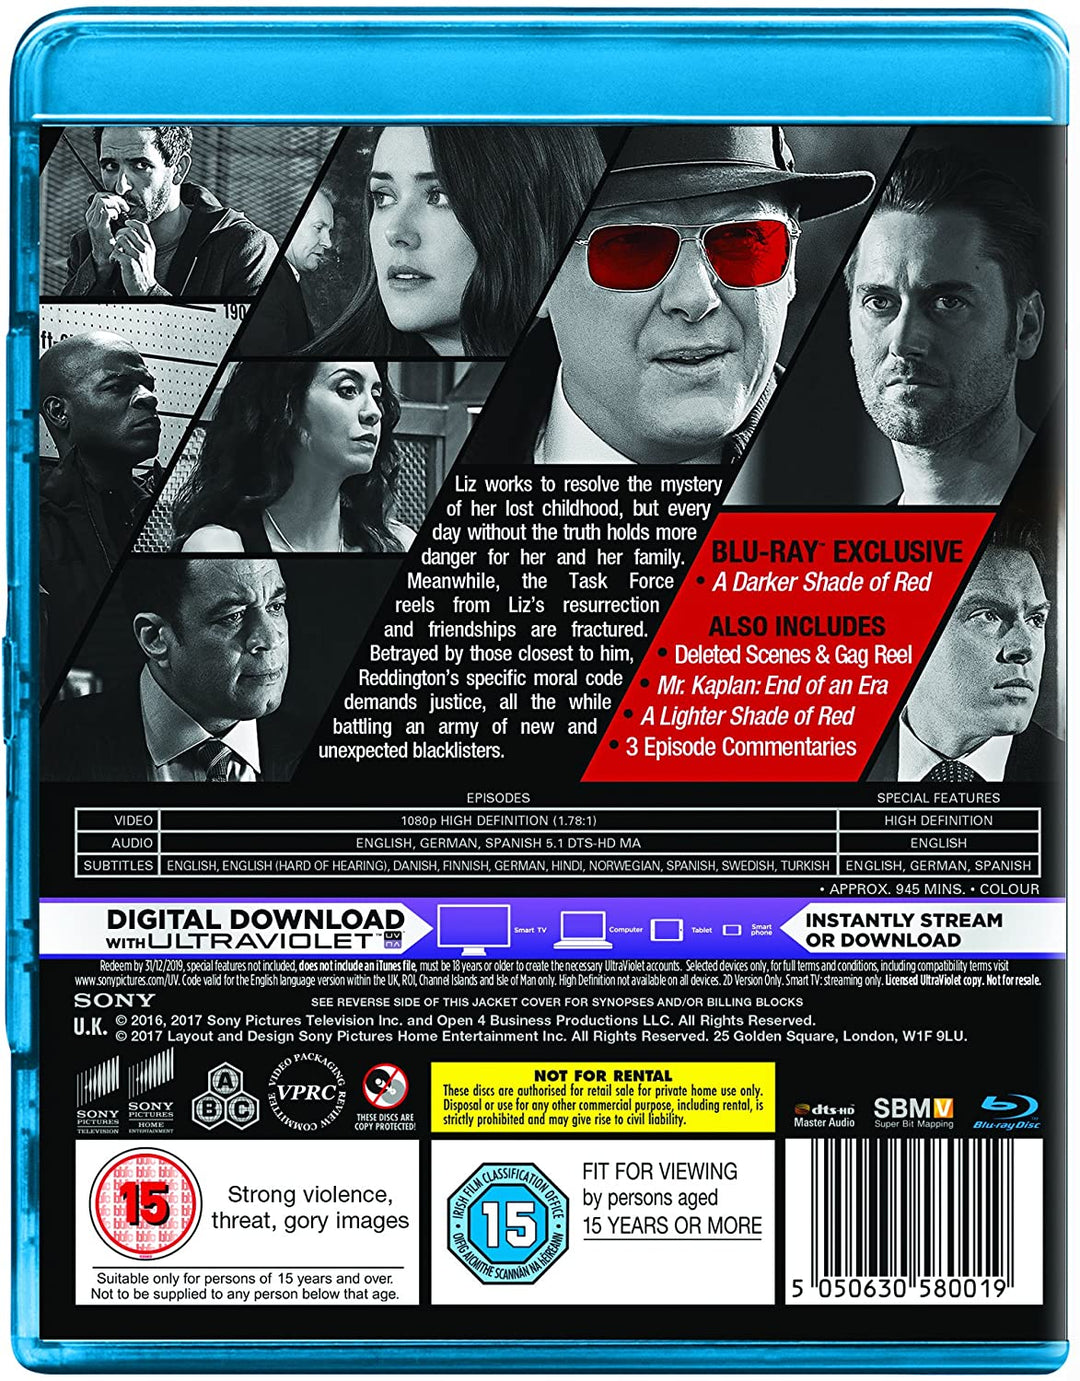 The Blacklist - Season 4 [Region Free] - Drama [Blu-ray]